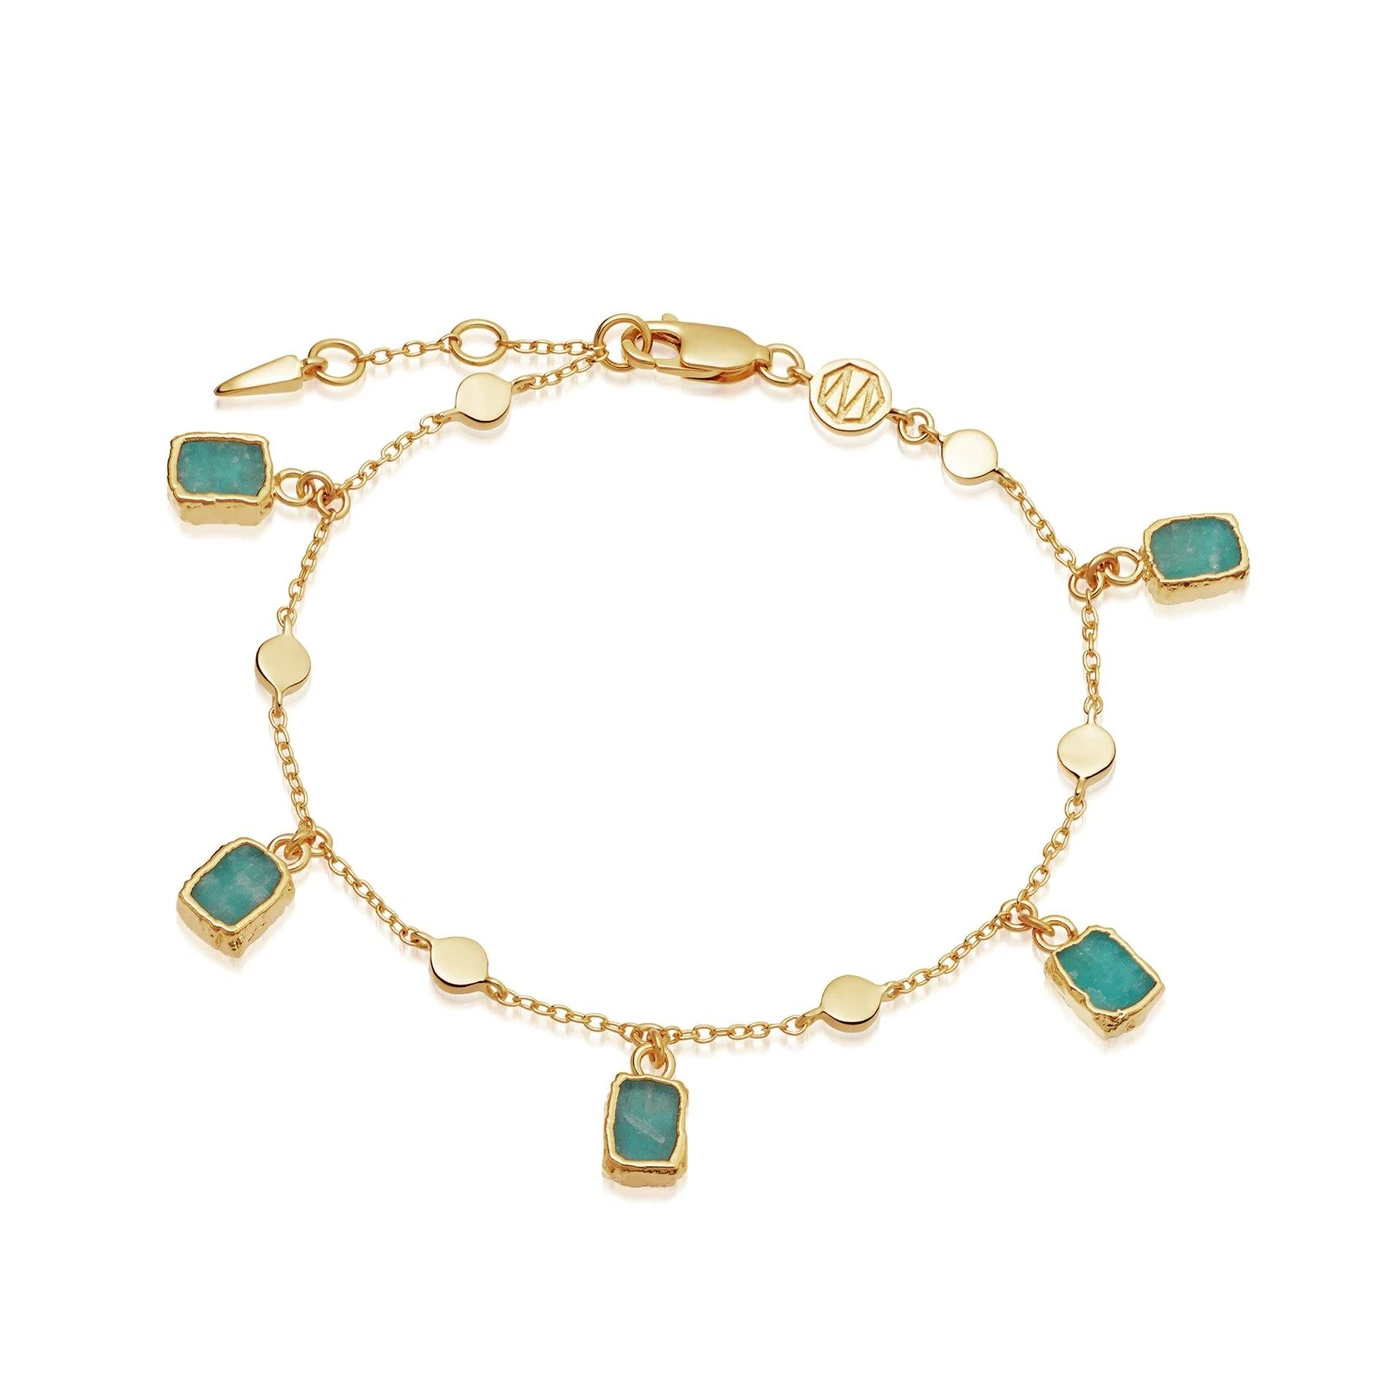 Atacado OEM 18ct Gold Vermeil pulseira com pingente em joias OEM/ODM prata esterlina com pedras verdes de amazonita